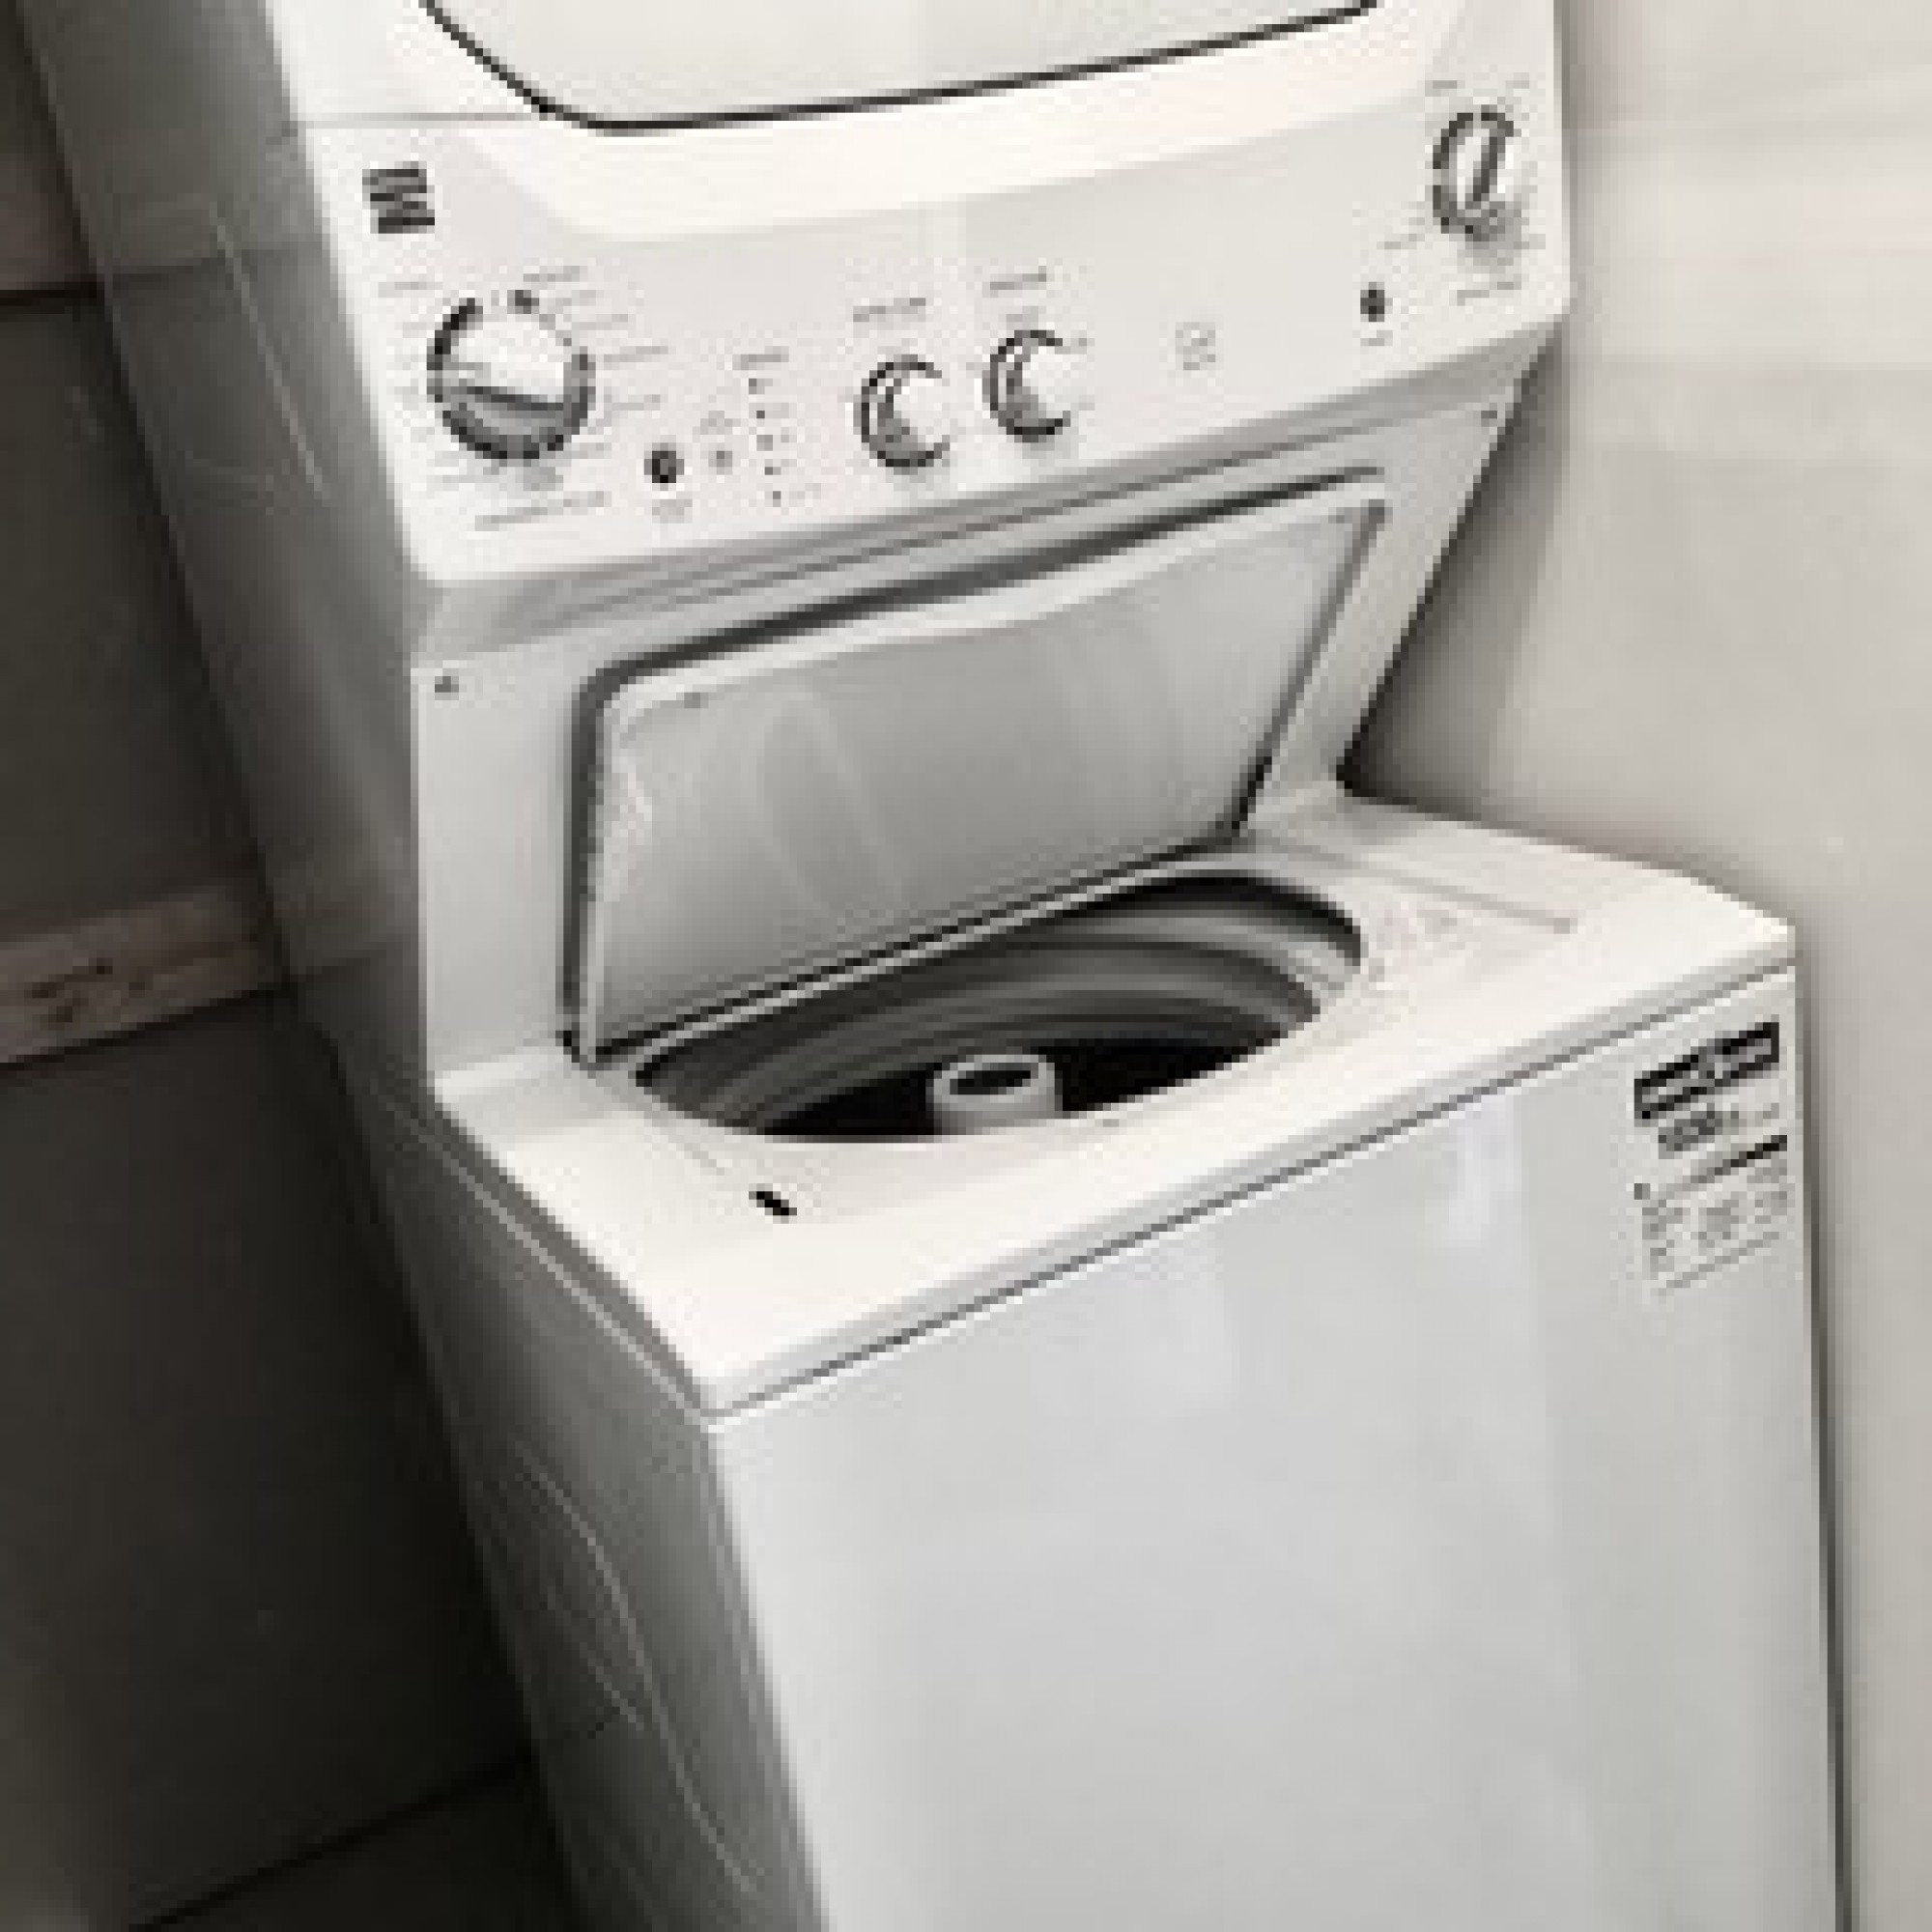 Laundry Key Image